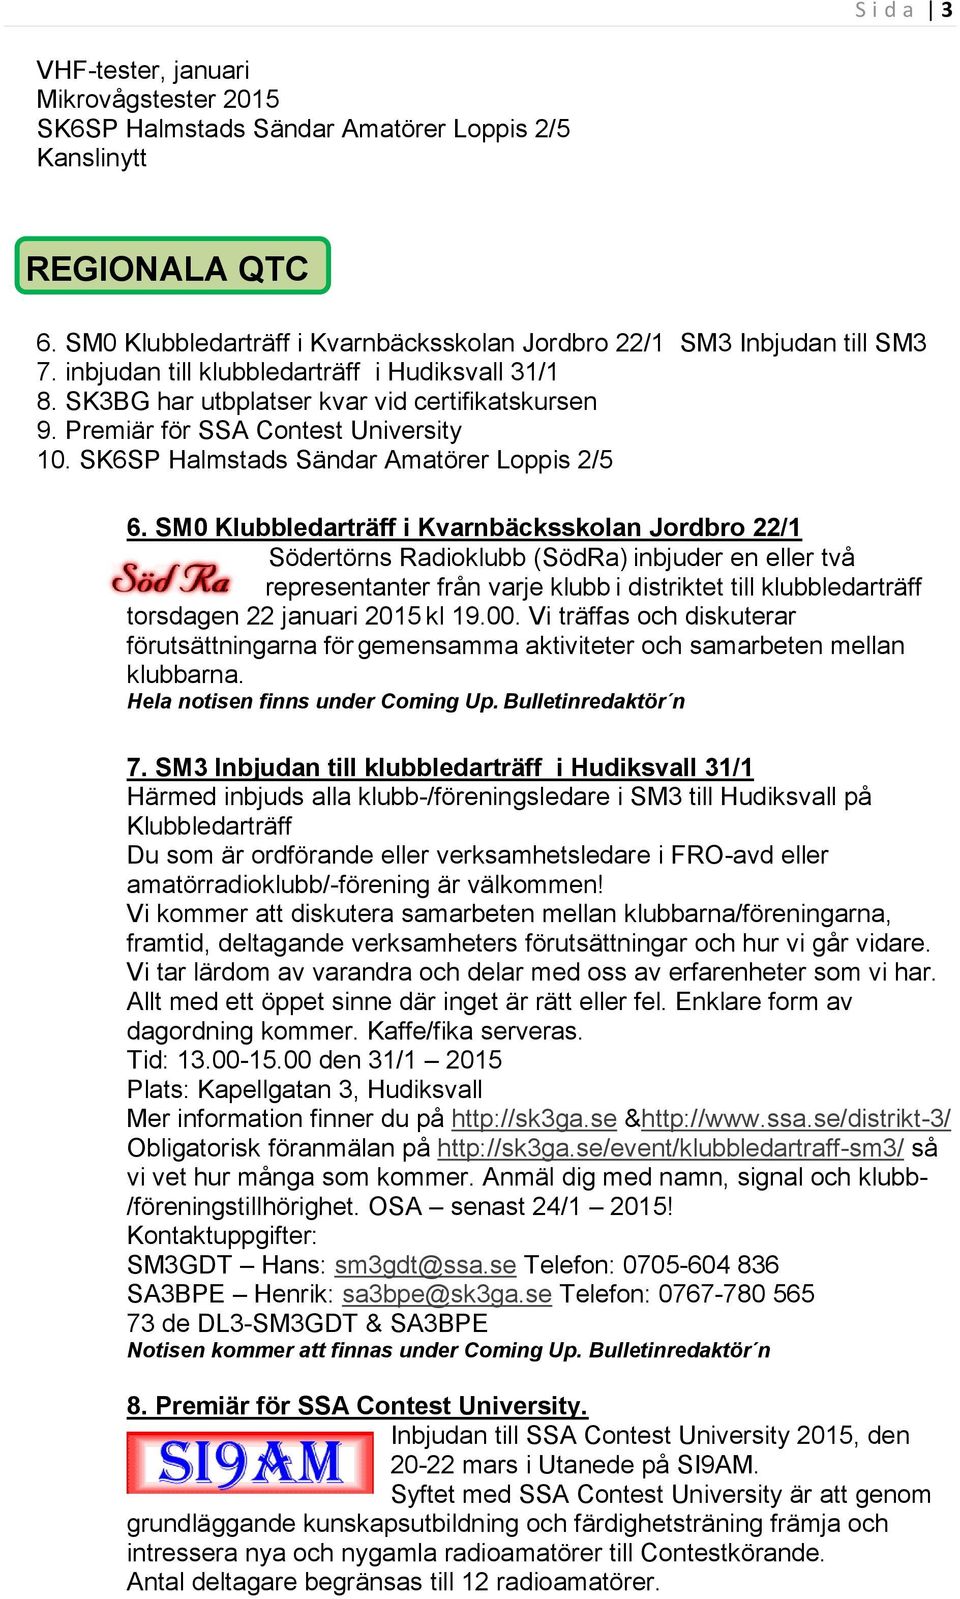 SM0 Klubbledarträff i Kvarnbäcksskolan Jordbro 22/1 Södertörns Radioklubb (SödRa) inbjuder en eller två representanter från varje klubb i distriktet till klubbledarträff torsdagen 22 januari 2015 kl